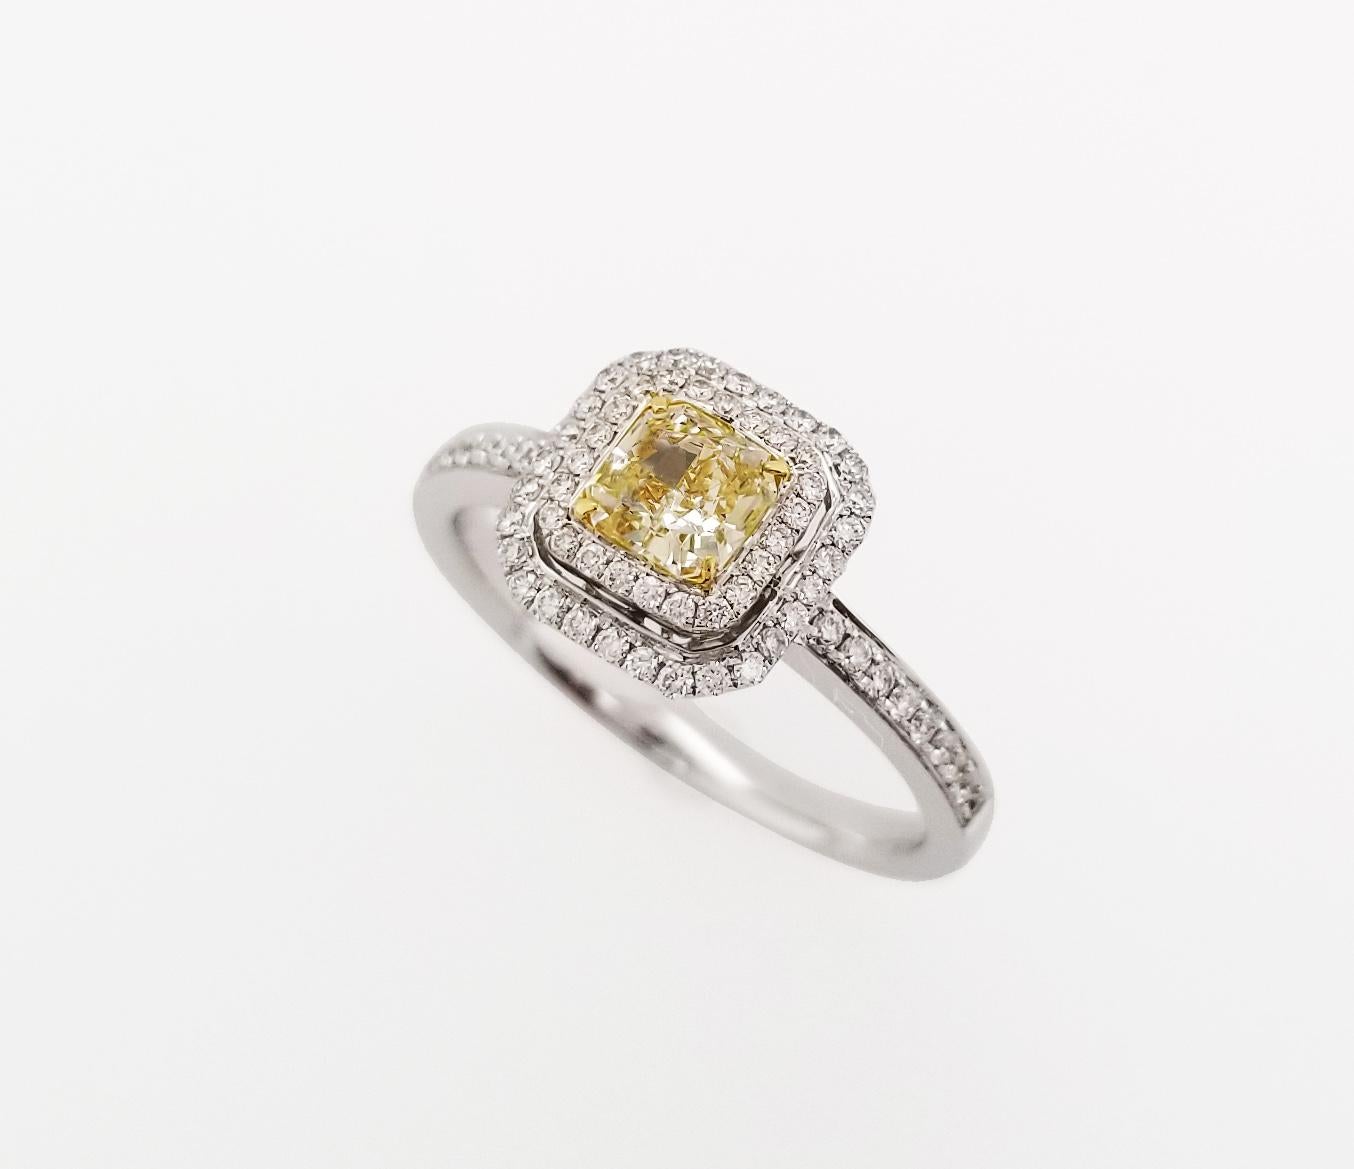 Geschenke zum Muttertag!

Ein natürlicher 0,52-Karat-Halo-Ring aus hellgelben Diamanten im Kissenschliff auf einem Band aus 18 Karat Weißgold mit zwei Reihen runder, strahlend weißer Diamanten. Alle Diamanten sind GIA-zertifiziert und das